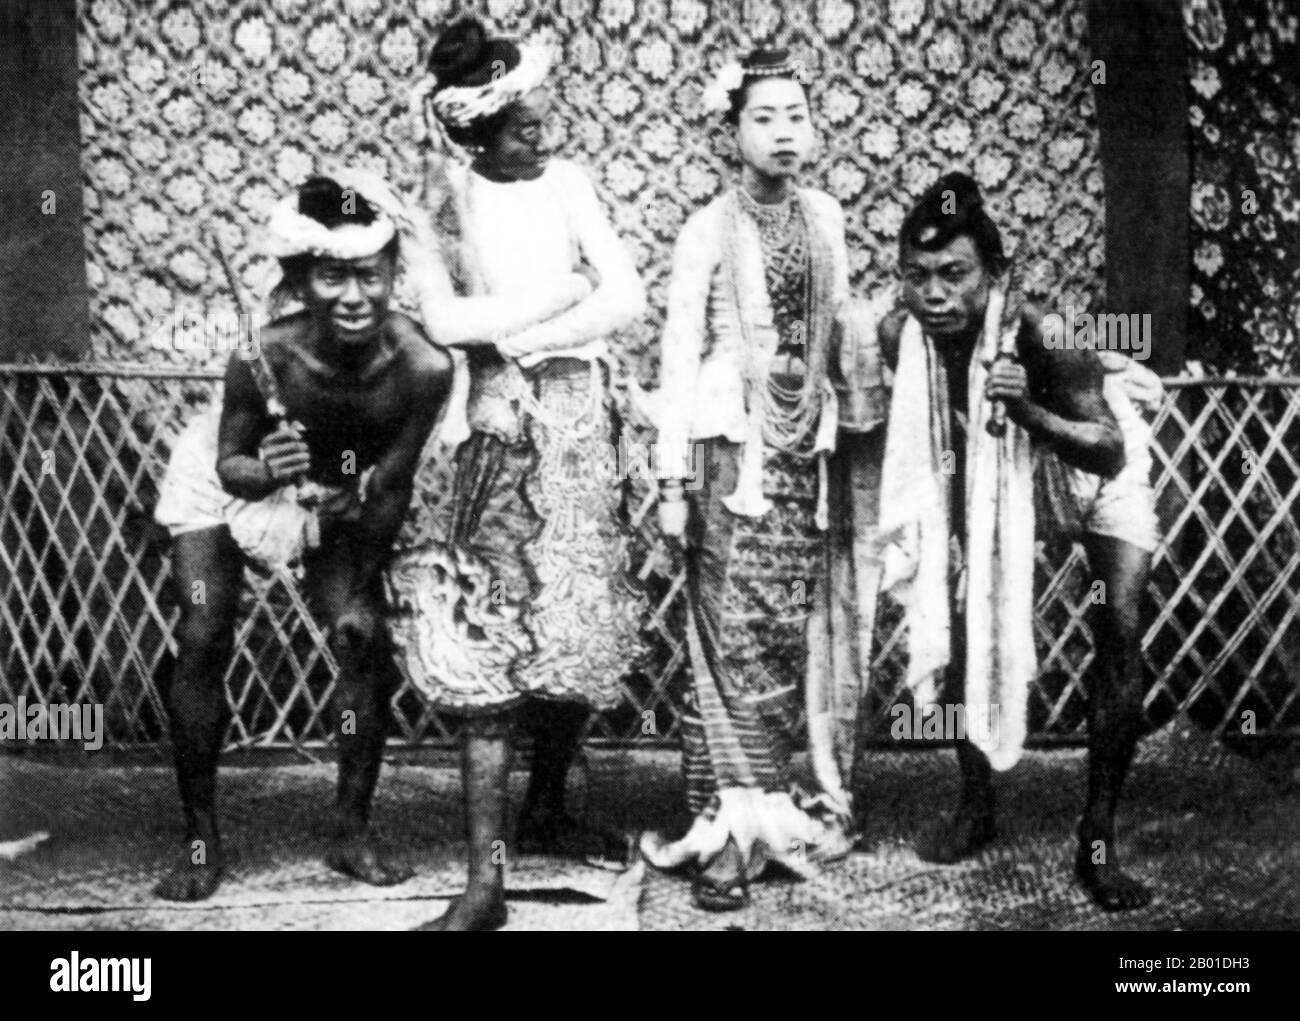 Birmanie : acteurs du théâtre, c. 1892-1896. La conquête britannique de la Birmanie a commencé en 1824 en réponse à une tentative birmane d'envahir l'Inde. En 1886, et après deux autres guerres, la Grande-Bretagne avait incorporé tout le pays dans le Raj britannique. Pour stimuler le commerce et faciliter les changements, les Britanniques ont fait venir des Indiens et des Chinois, qui ont rapidement déplacé les Birmans dans les zones urbaines. À ce jour, Rangoon et Mandalay ont de grandes populations indiennes ethniques. Des chemins de fer et des écoles ont été construits, ainsi qu'un grand nombre de prisons, y compris la tristement célèbre prison d'Insein, alors utilisée pour les prisonniers politiques. Banque D'Images